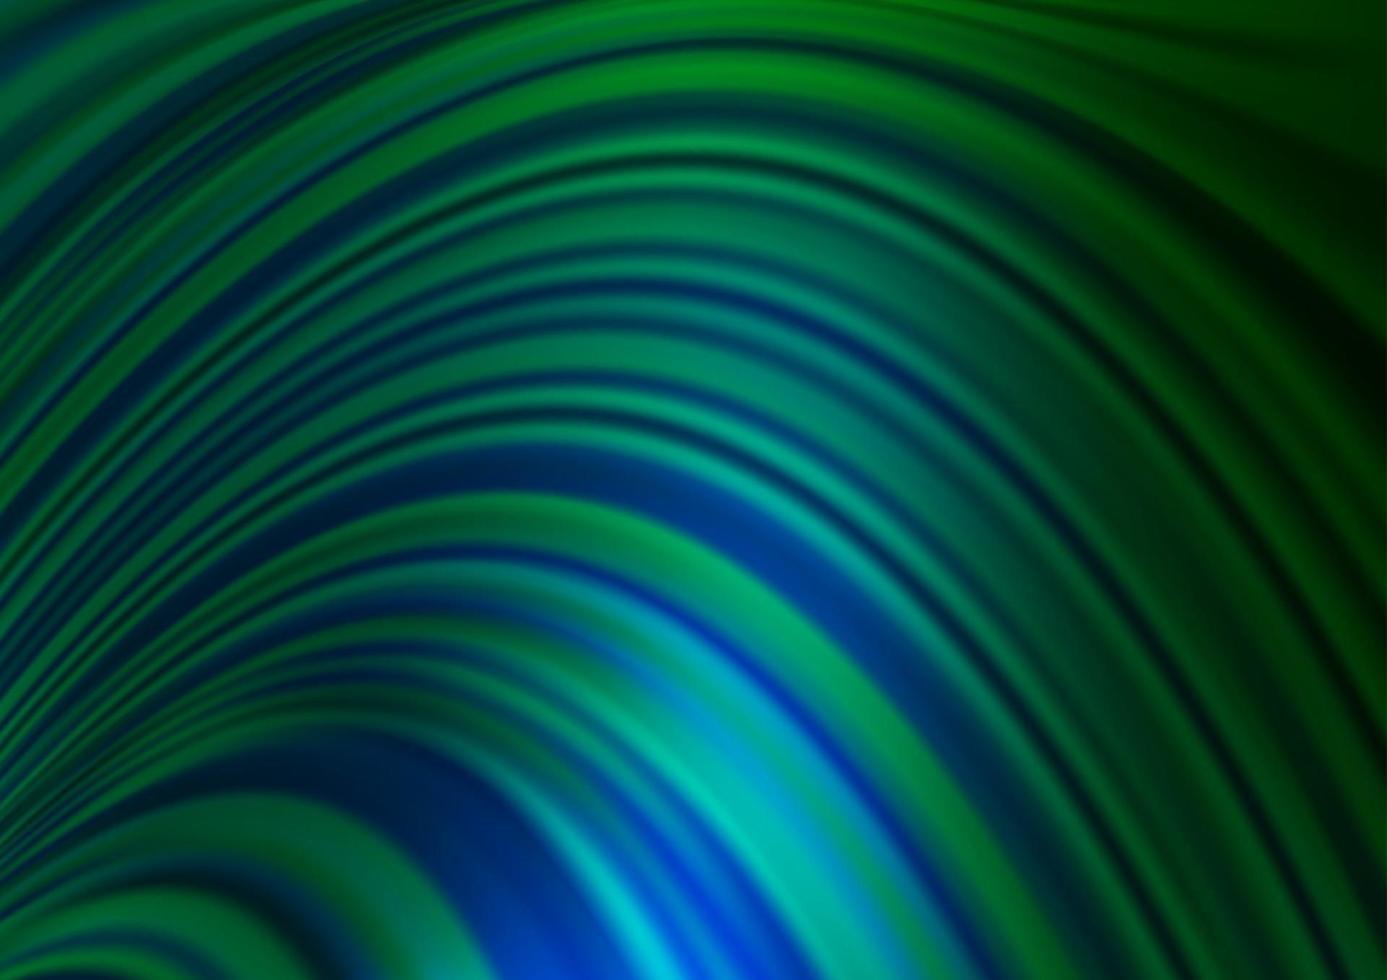 padrão de vetor azul e verde escuro com linhas ovais.